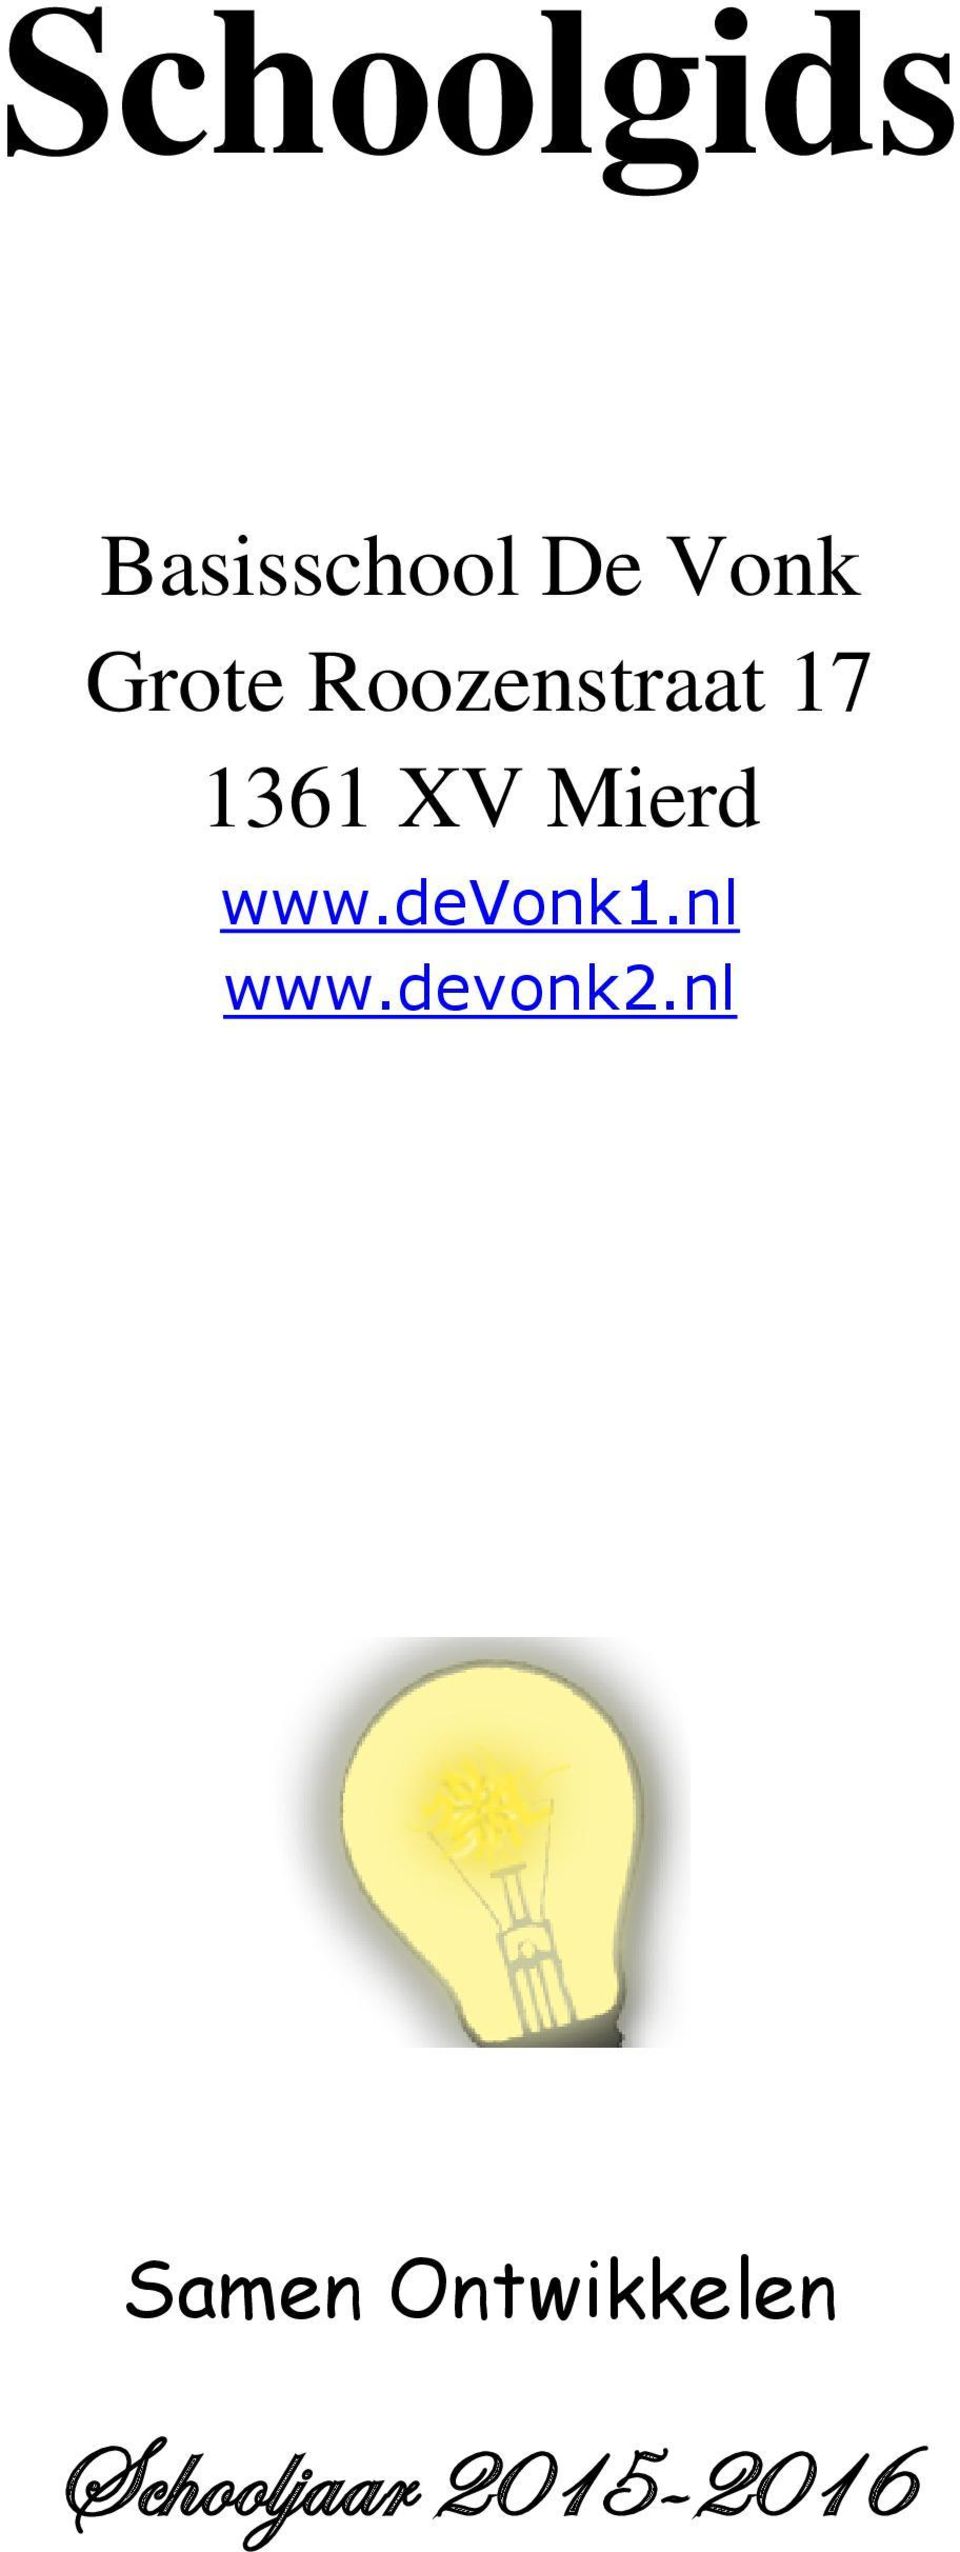 Mierd www.devonk1.nl www.devonk2.